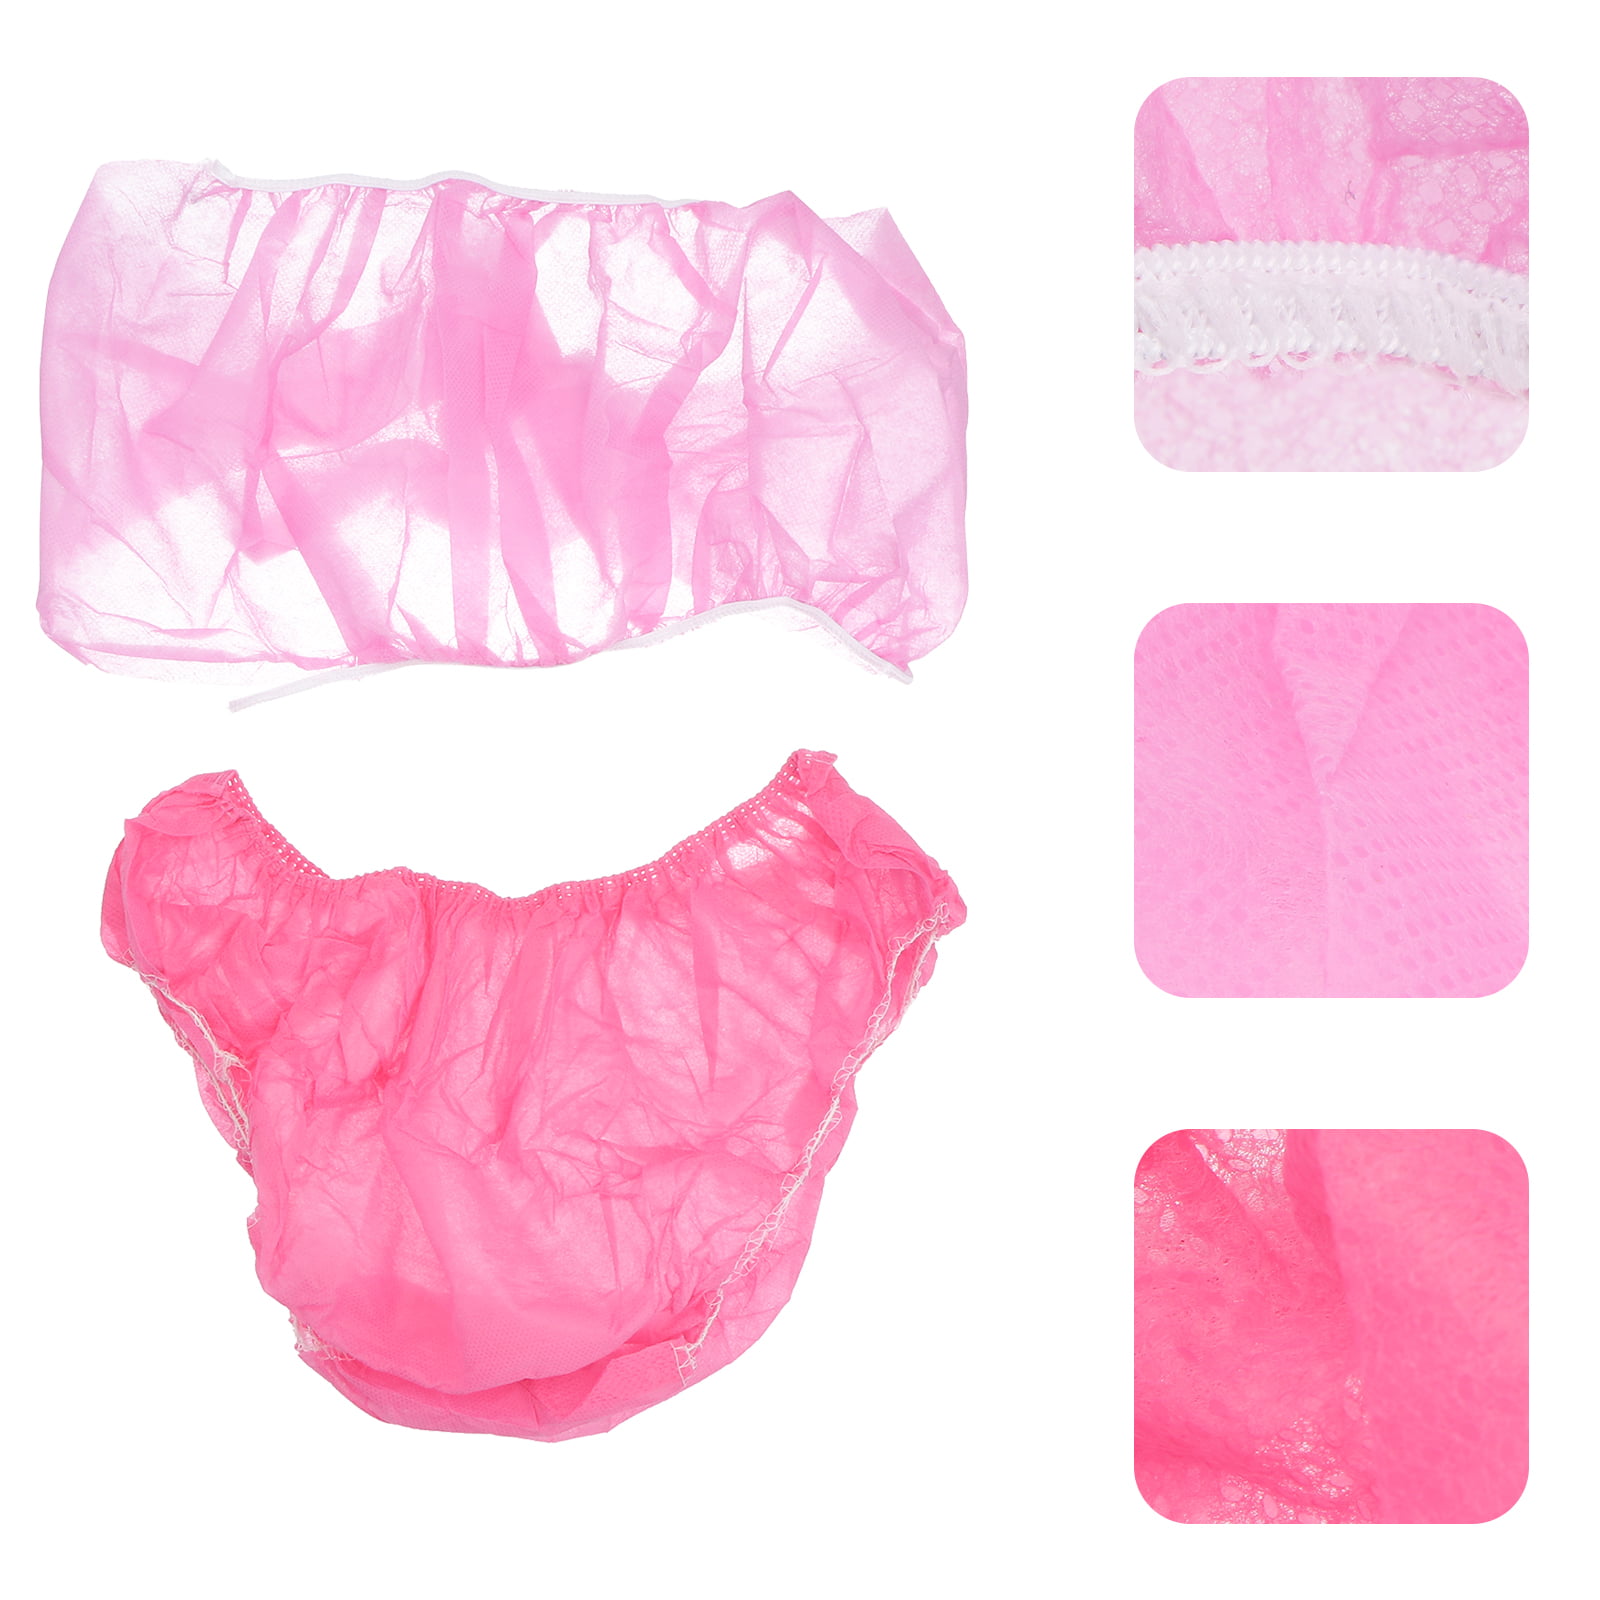 Nuk Disposable Women's Underwear Size M 4 pack l Sanareva